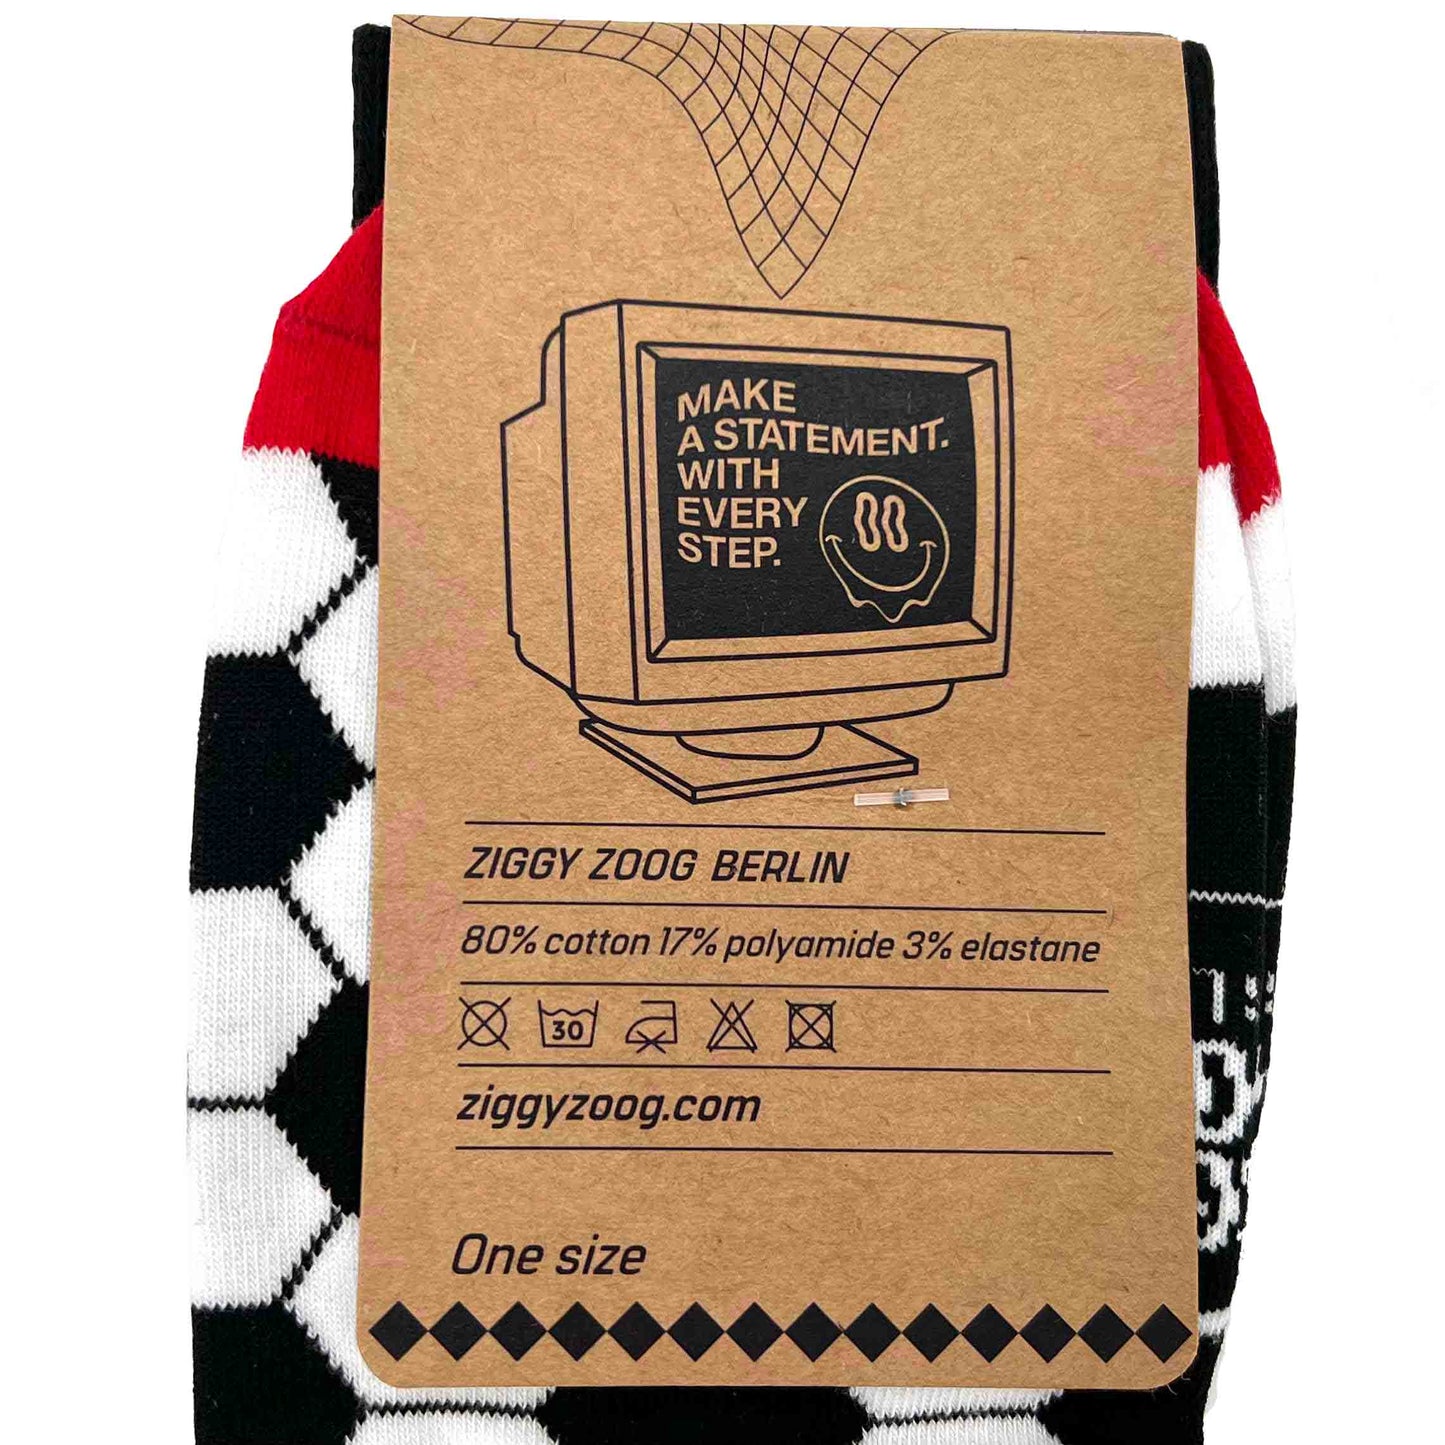 ZIGGI ZOOG Socken mit Fußbällen "Foot & Ball" | schwarz, rot& gelb | Baumwolle, Polyamide, Elastan | one size